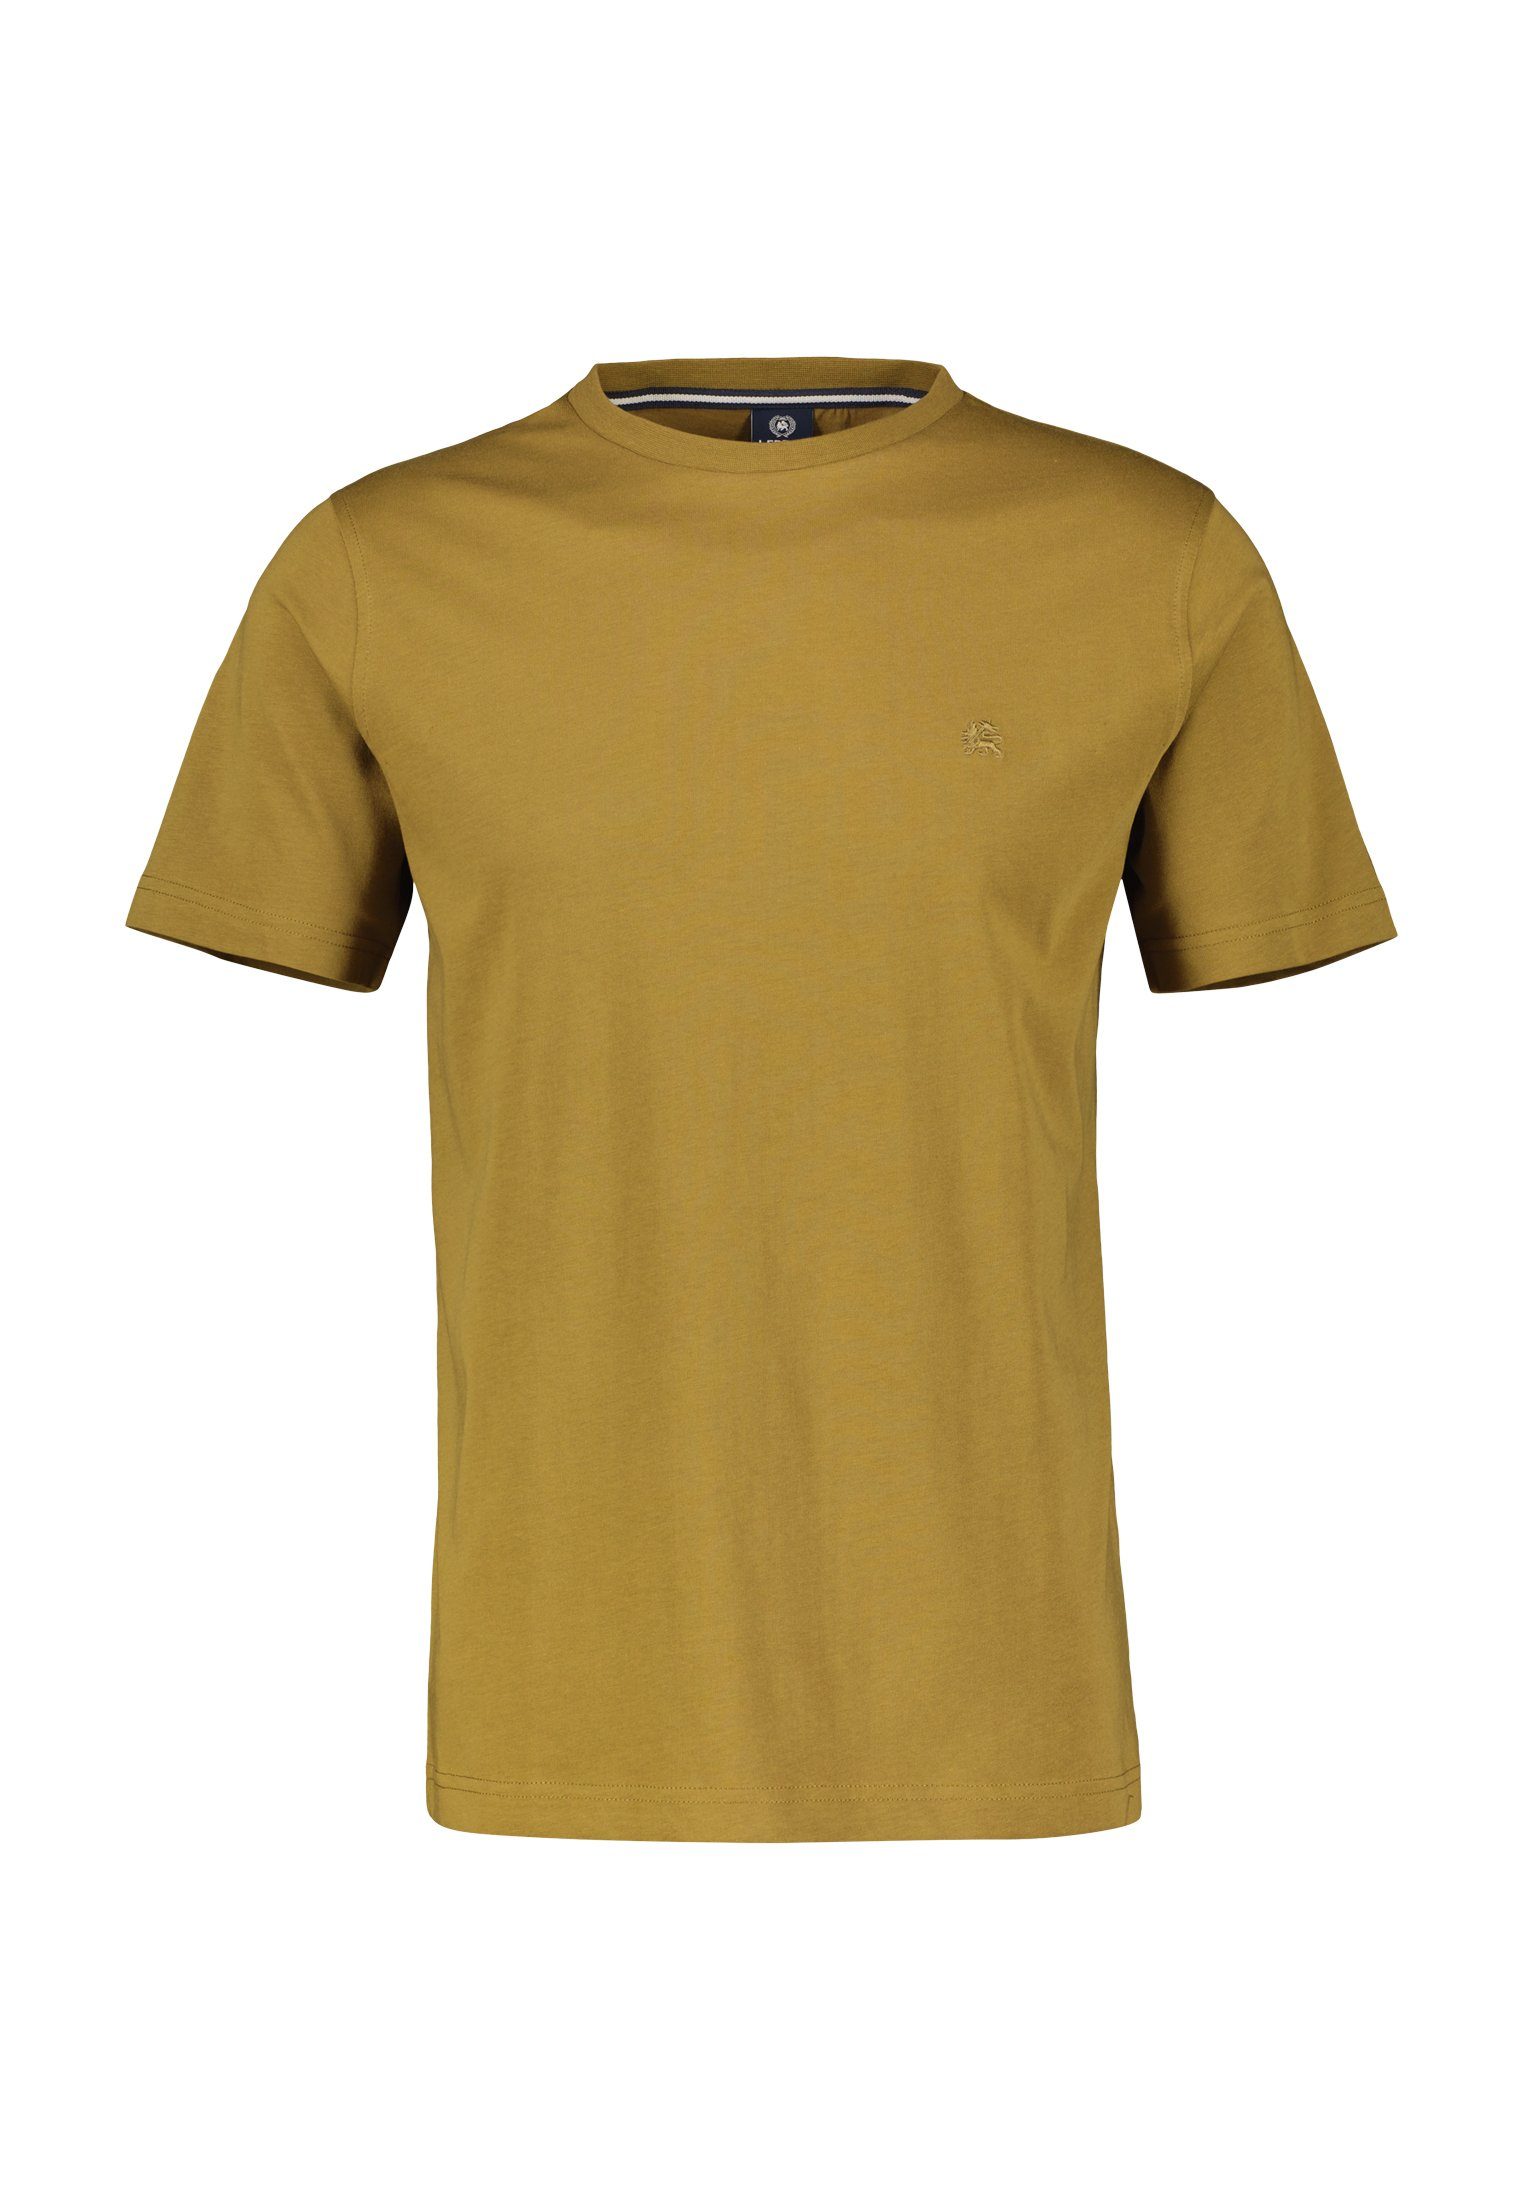 TOBACCO T-Shirt LERROS in LERROS Farben vielen DRIED T-Shirt